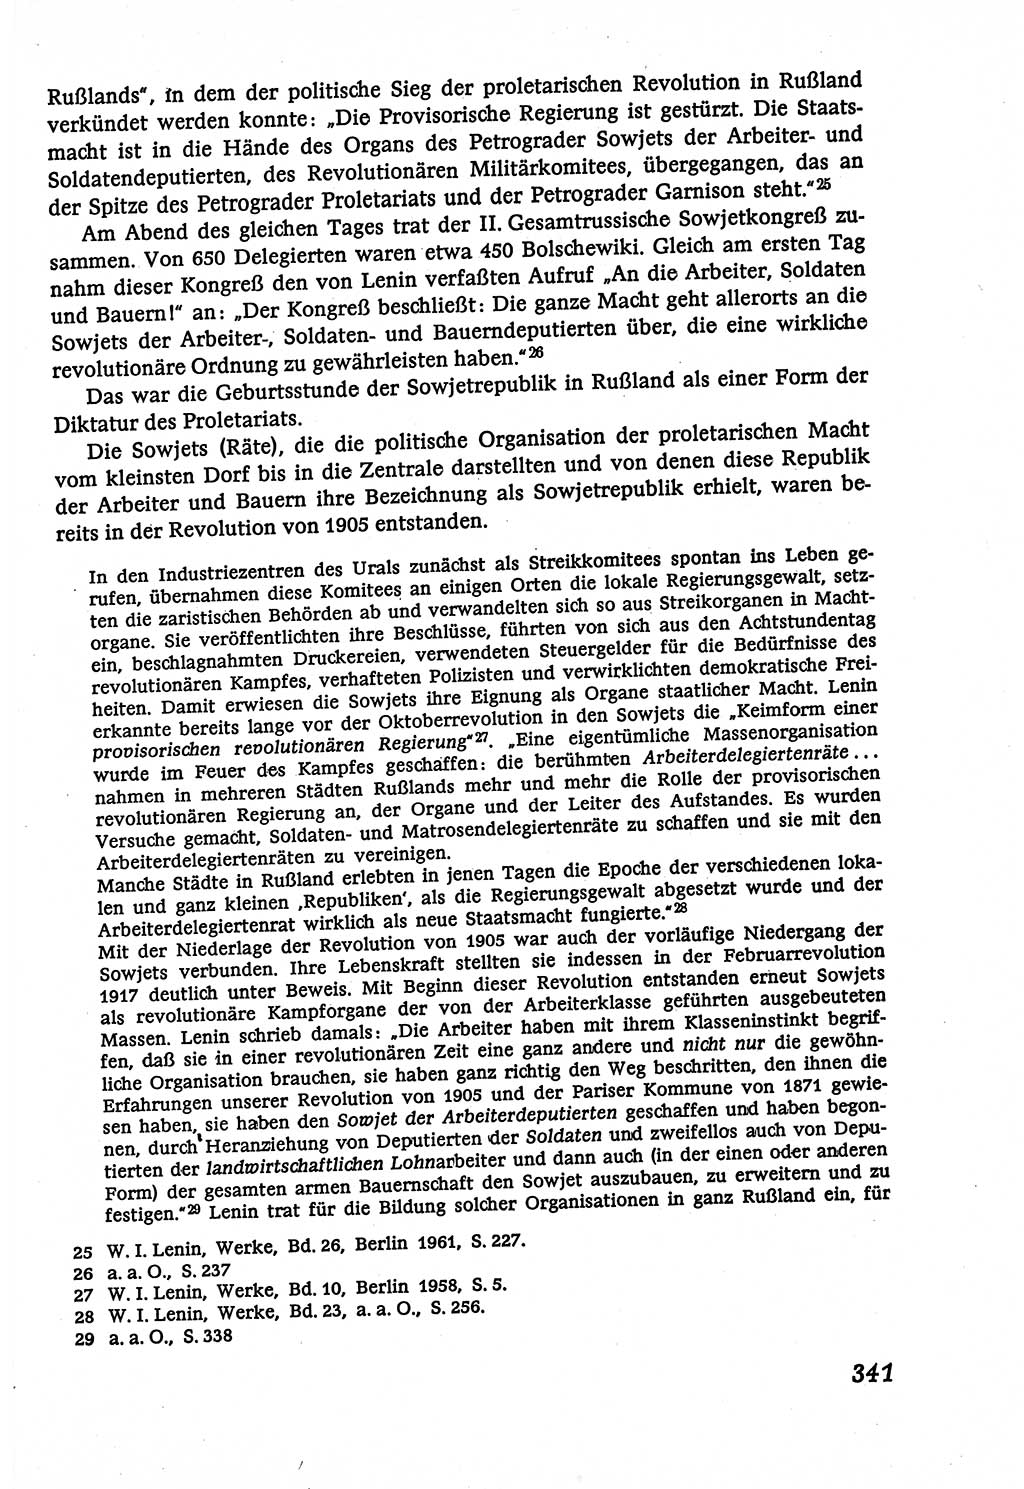 Marxistisch-leninistische (ML) Staats- und Rechtstheorie [Deutsche Demokratische Republik (DDR)], Lehrbuch 1980, Seite 341 (ML St.-R.-Th. DDR Lb. 1980, S. 341)